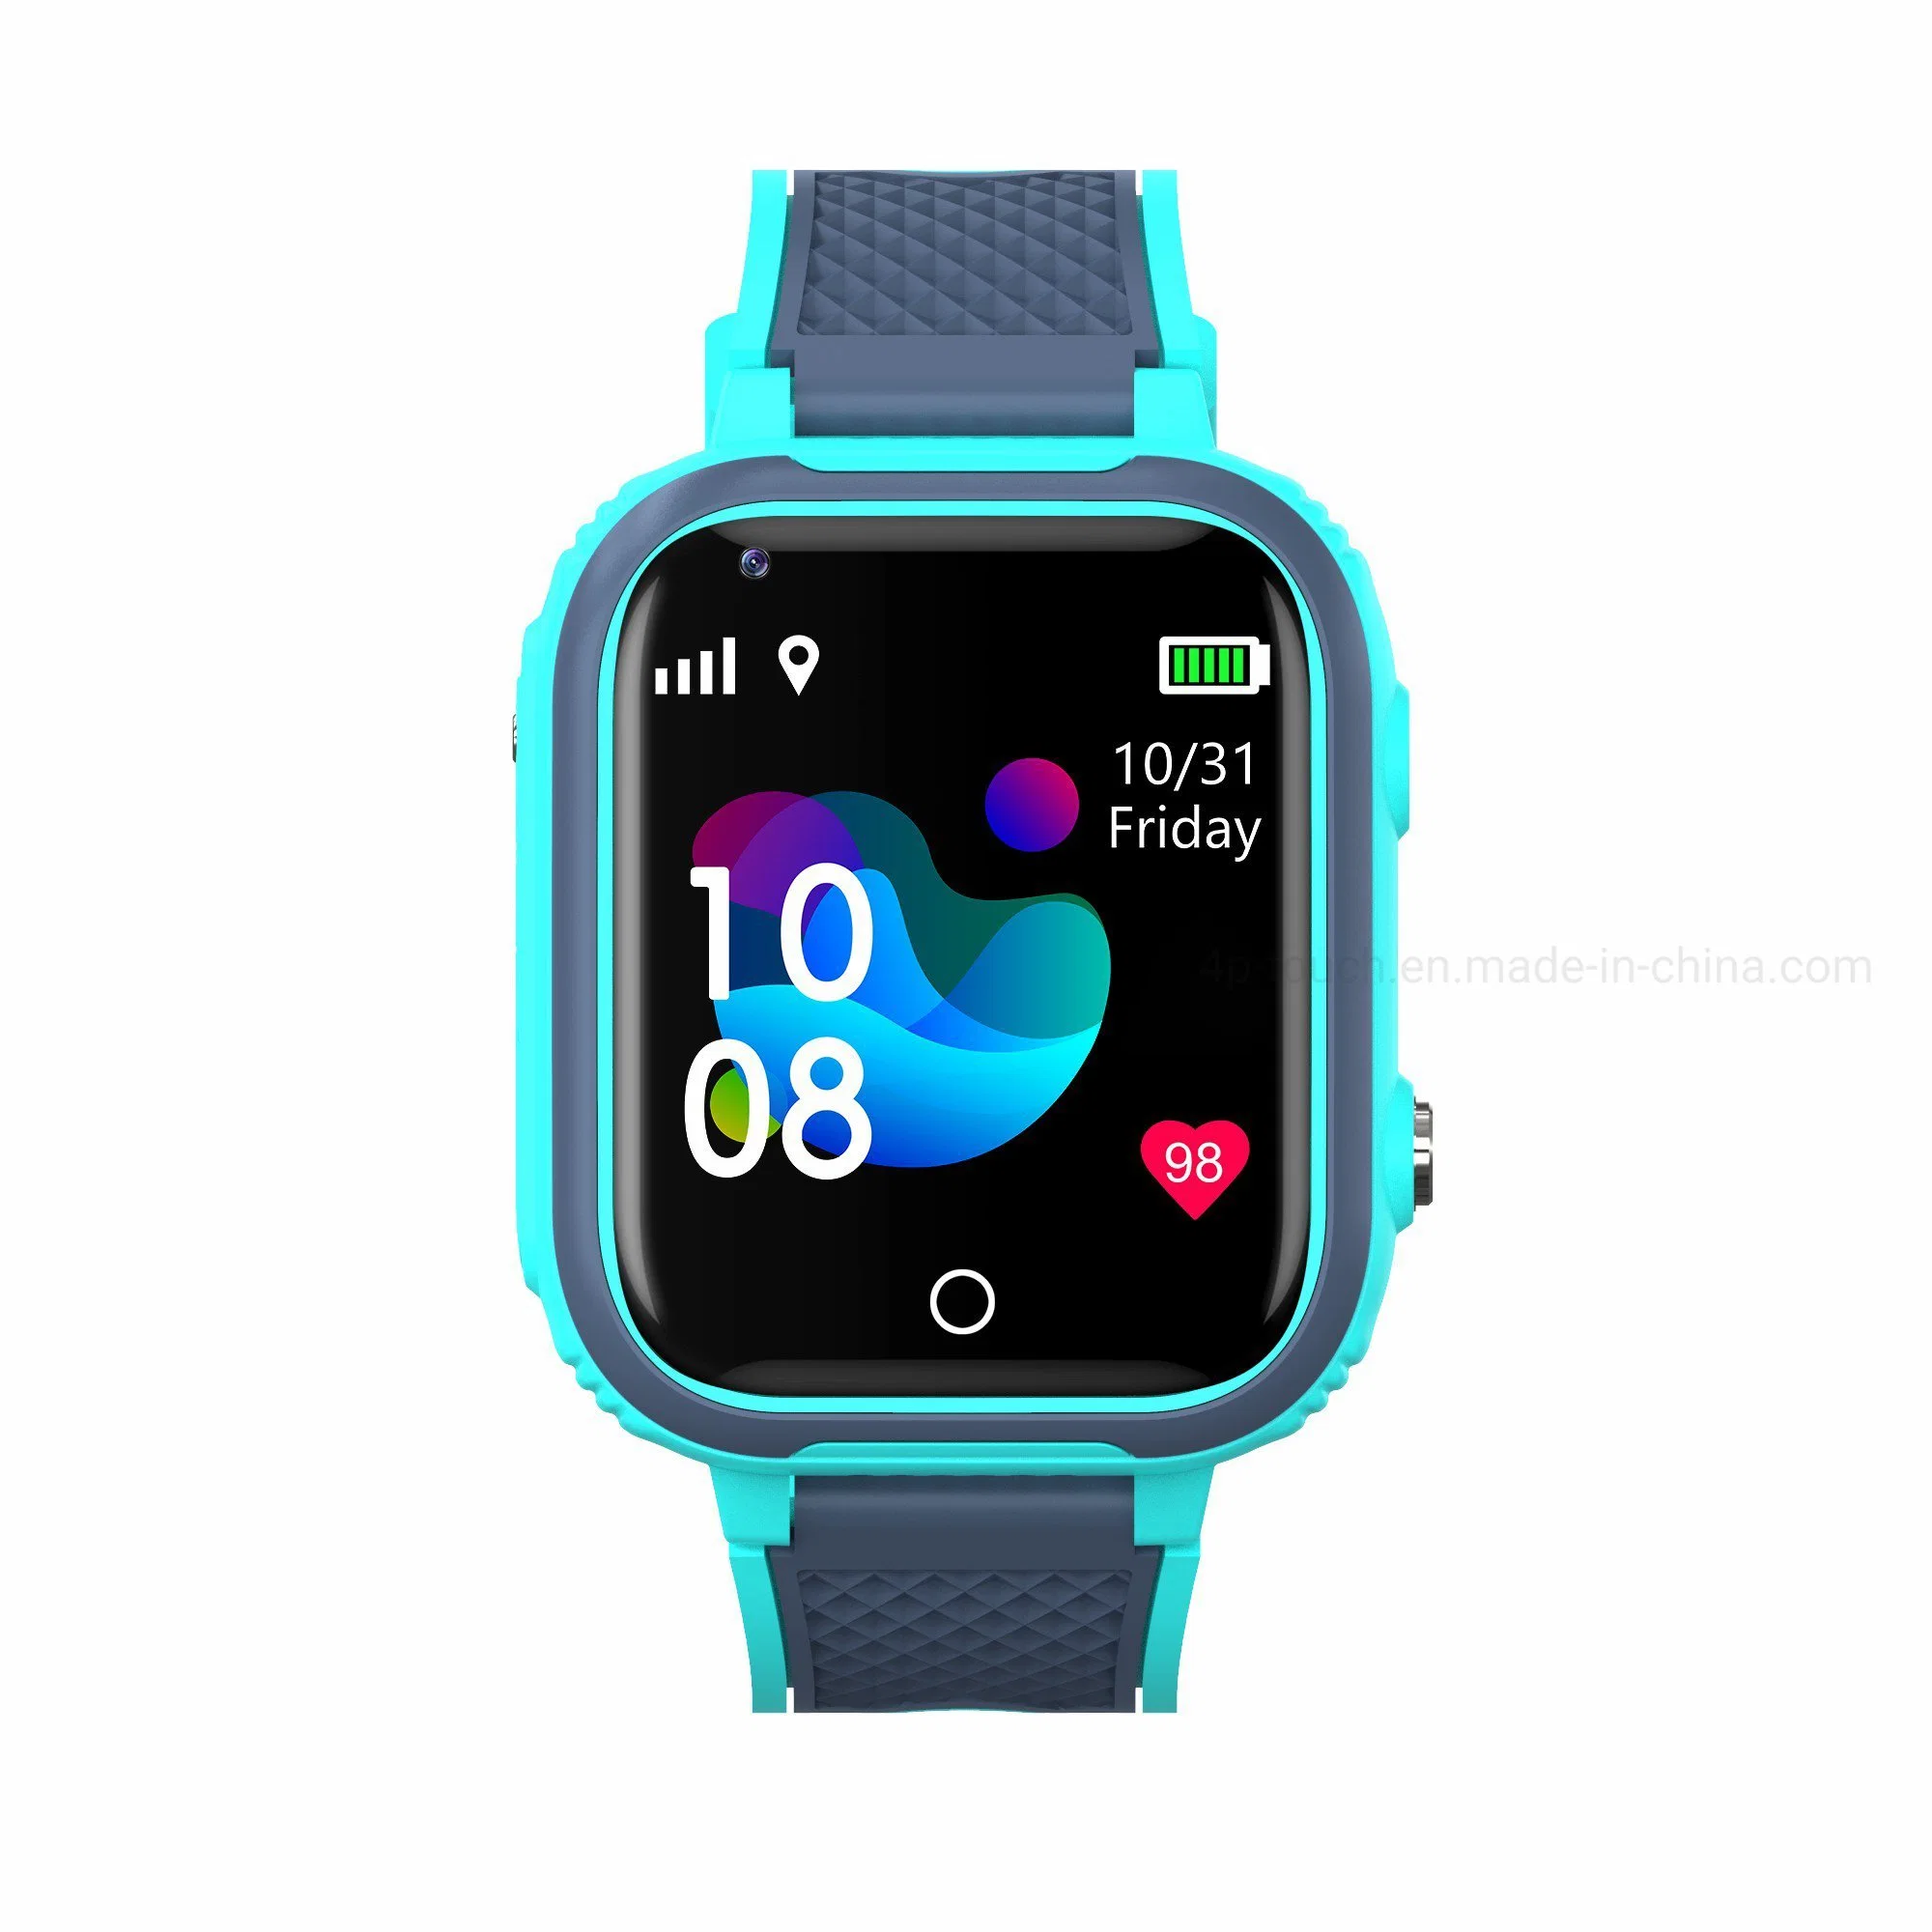 Calidad 4G impermeable IP67 niños Smart Watch video llamada inteligente GPS con GPS de seguimiento WiFi con llamada de emergencia SOS para ayuda D53